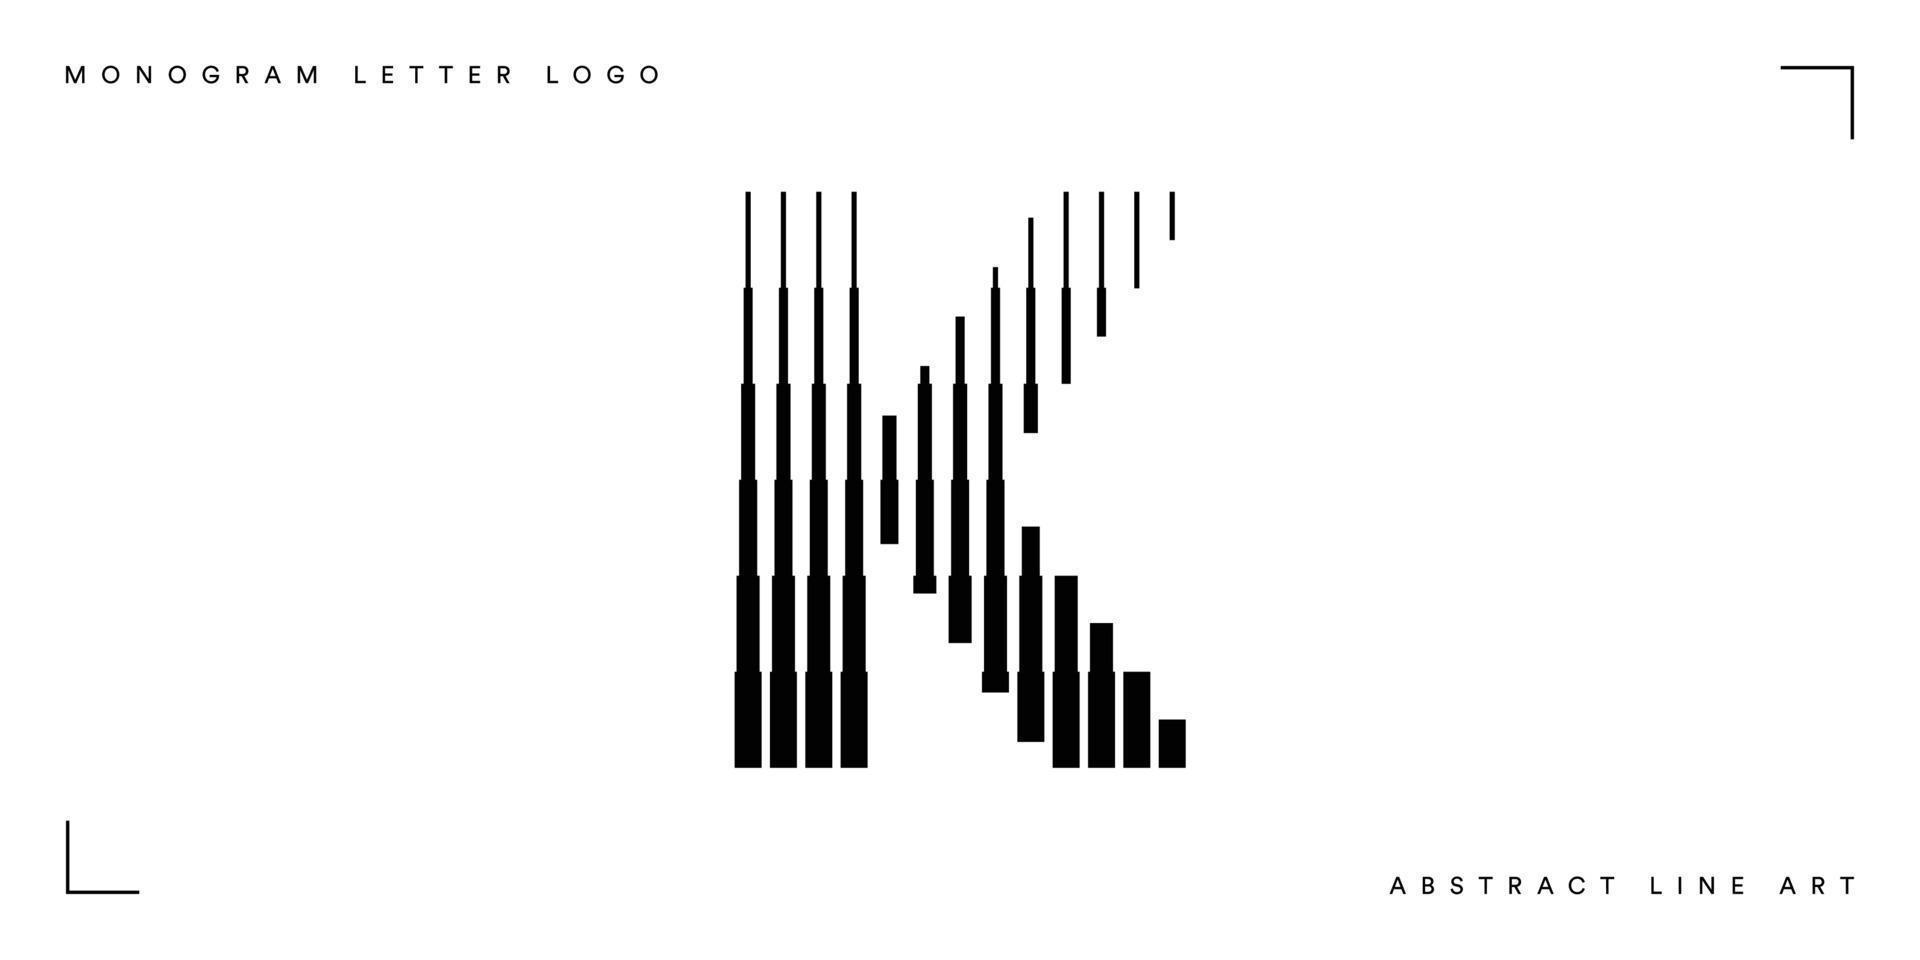 Abstract line art letter k monogram logo vector